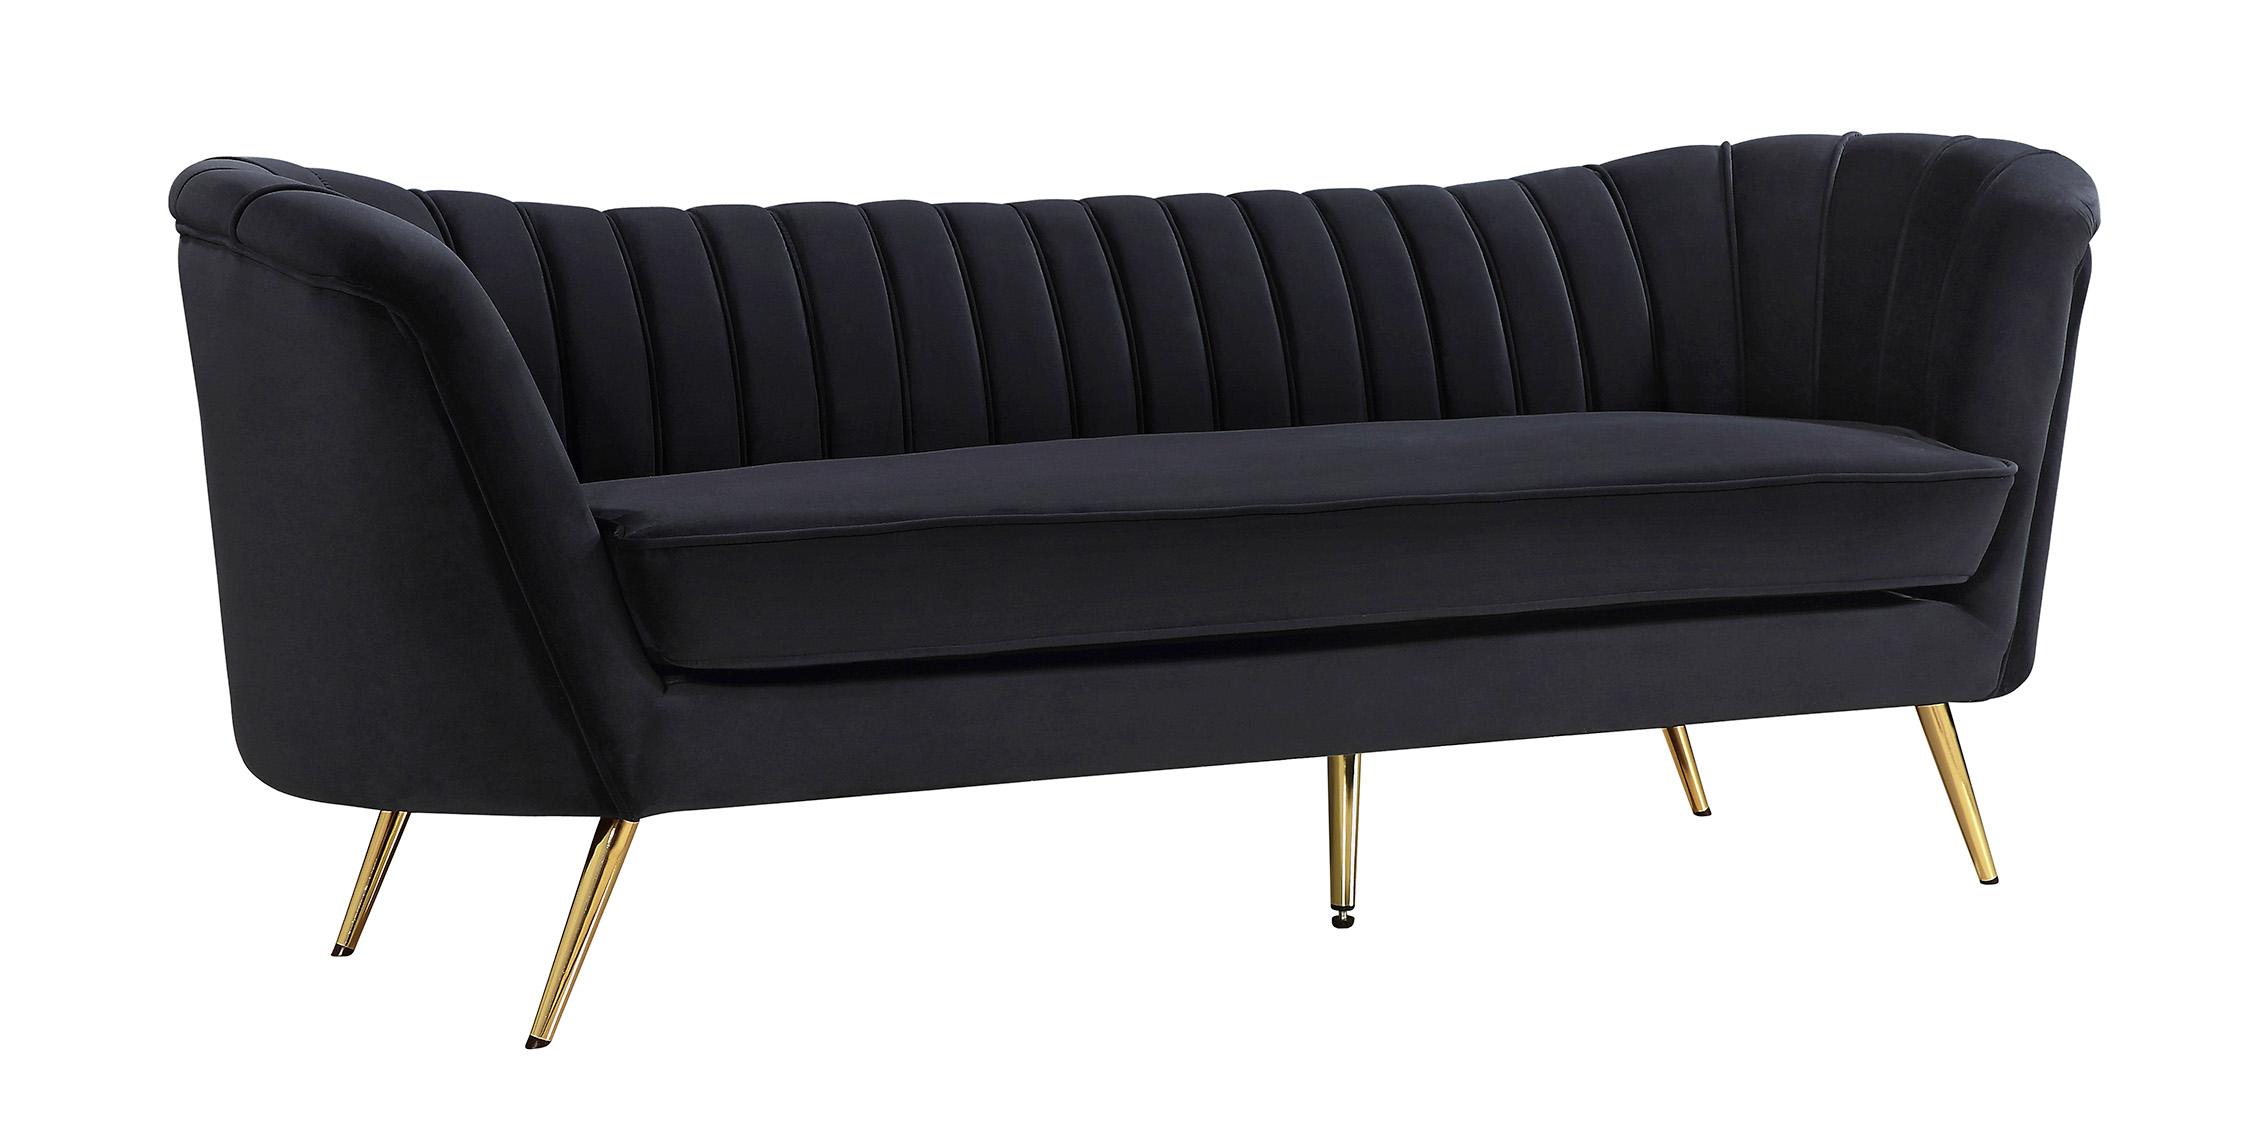 

    
Glam Black Velvet Curved Back Sofa Margo 622Black-S Meridian Modern Contemporary
